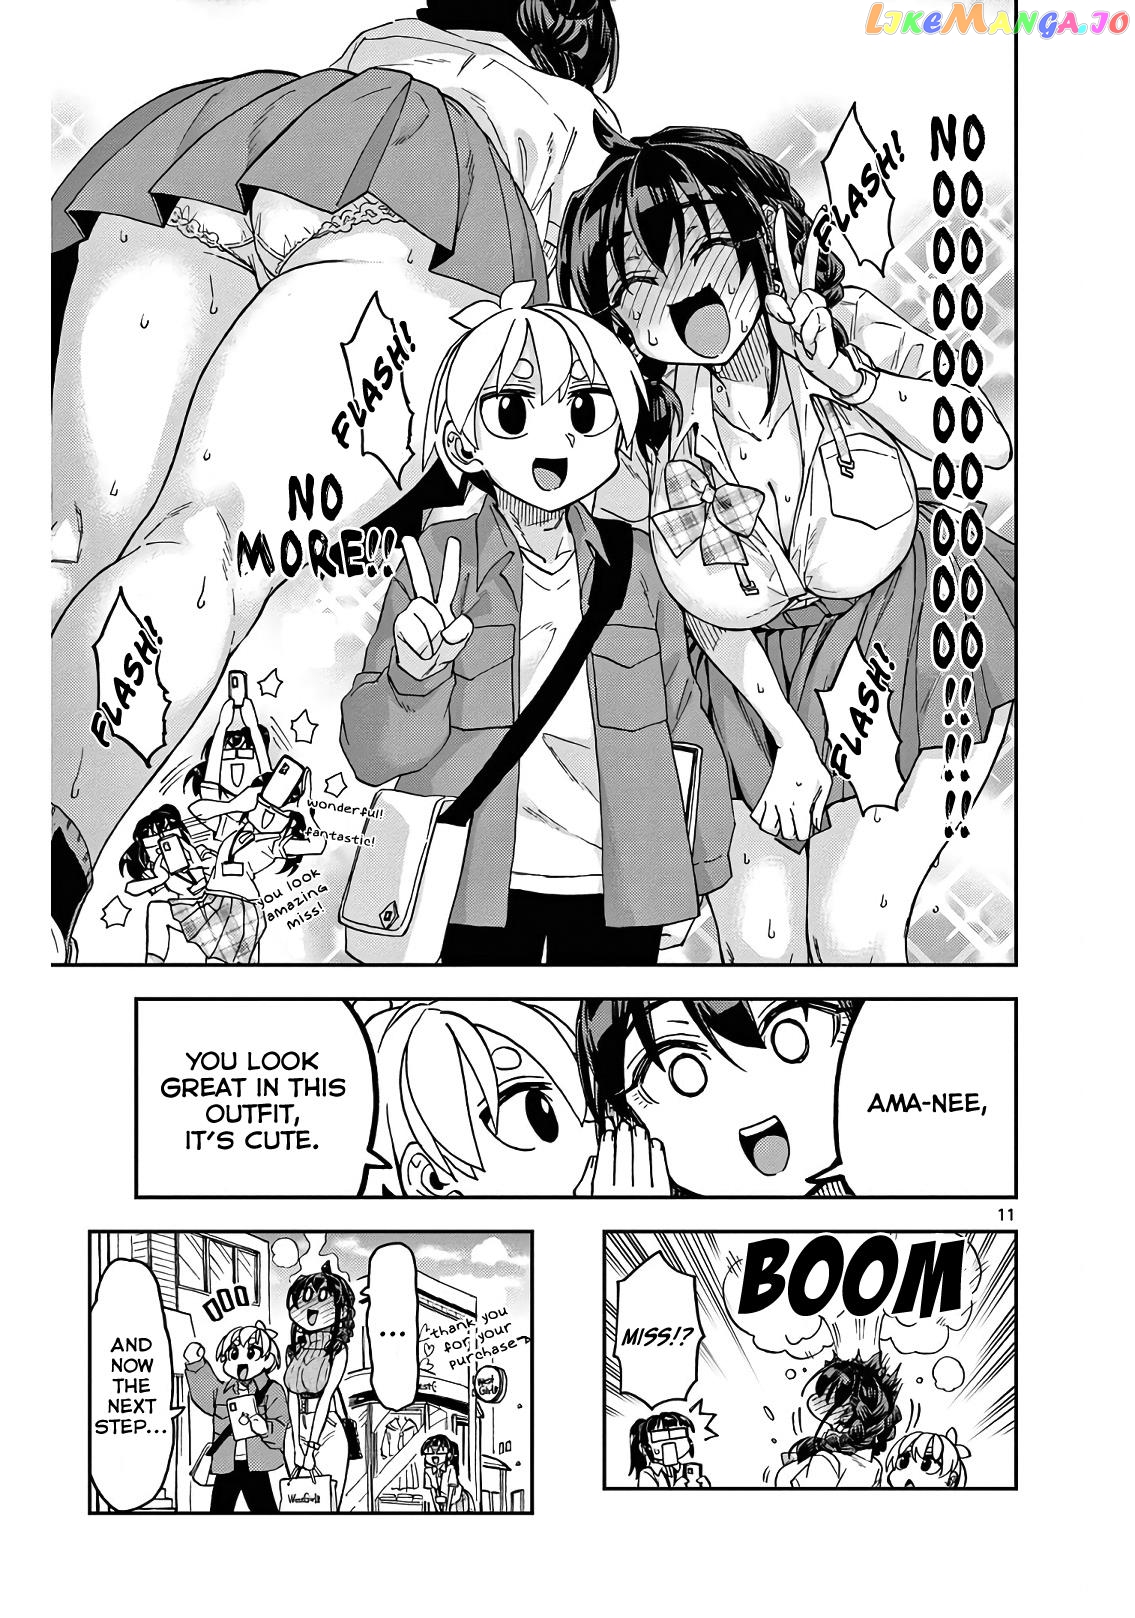 Kono Manga No Heroine Wa Morisaki Amane Desu. vol.1 chapter 2 - page 11